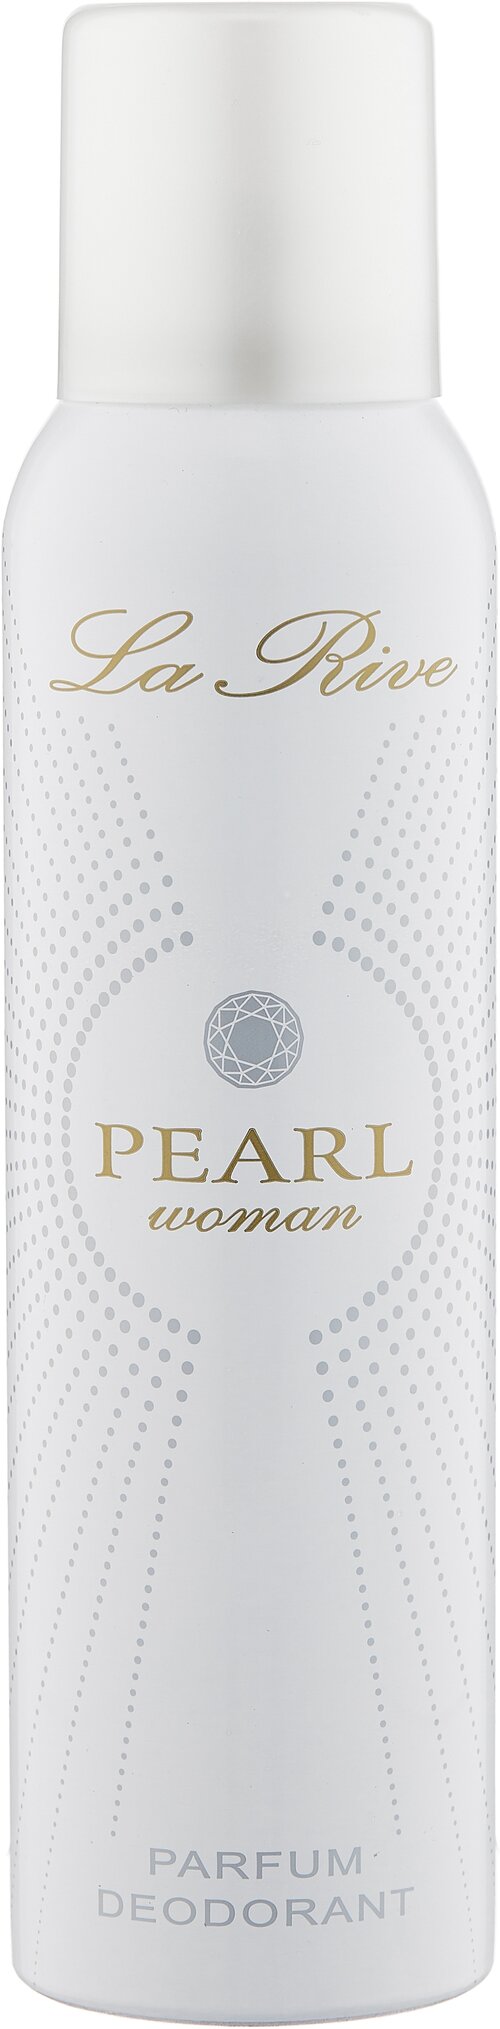 La Rive Дезодорант Pearl Woman, спрей, 150 мл, 1 шт.